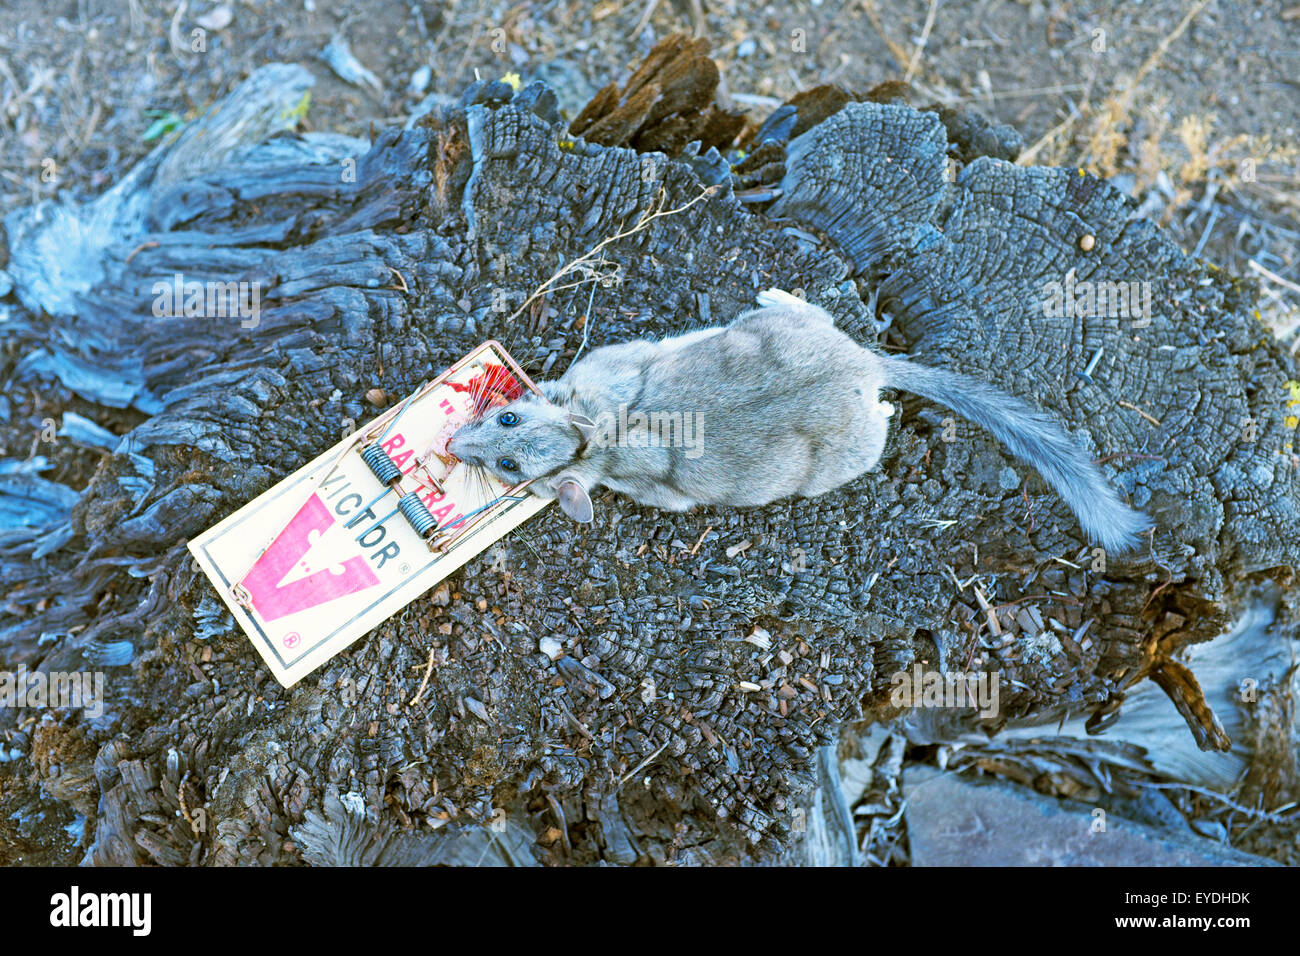 Un morto packrat o cespugliosa woodrat codato catturati in una trappola di ratto. Foto Stock